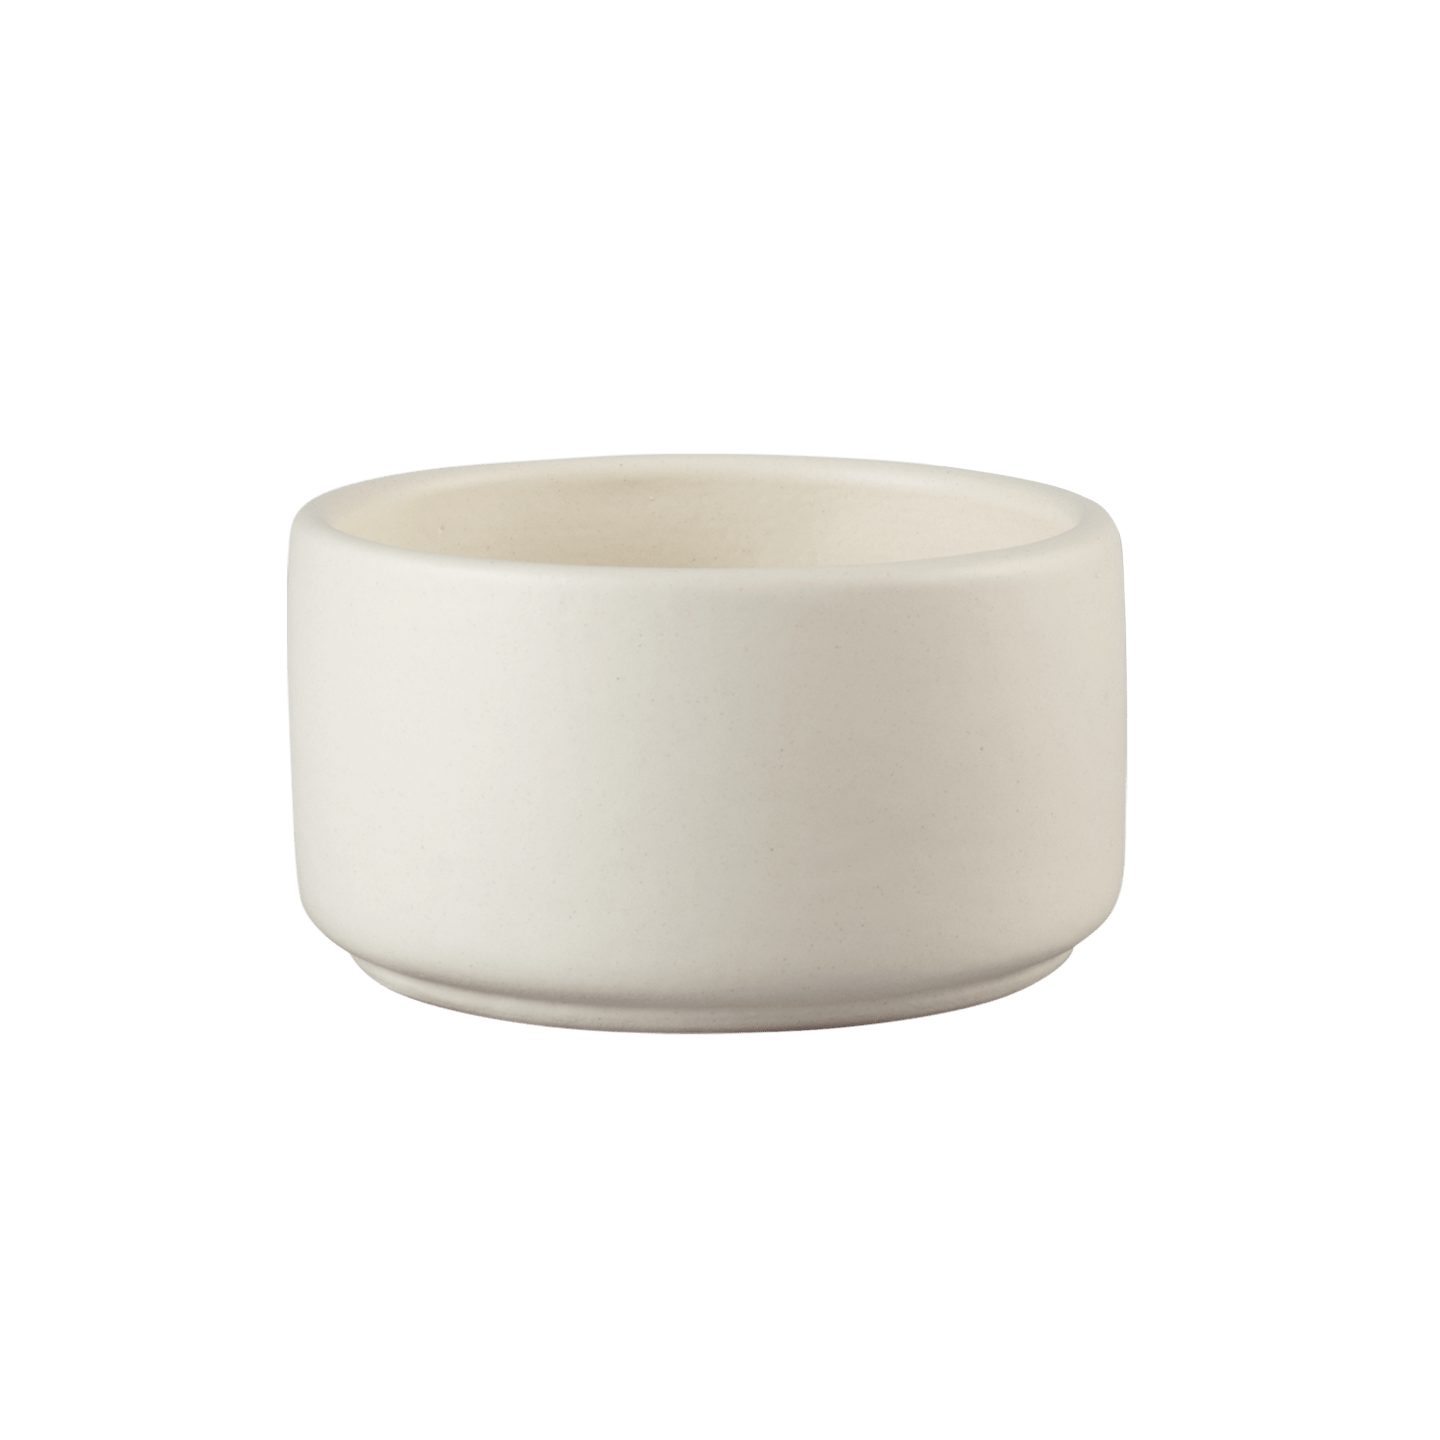 RUCK - Keramik Aufbewahrungsdose, offwhite, handgefertigte, Ø 9,5 cm in off-white